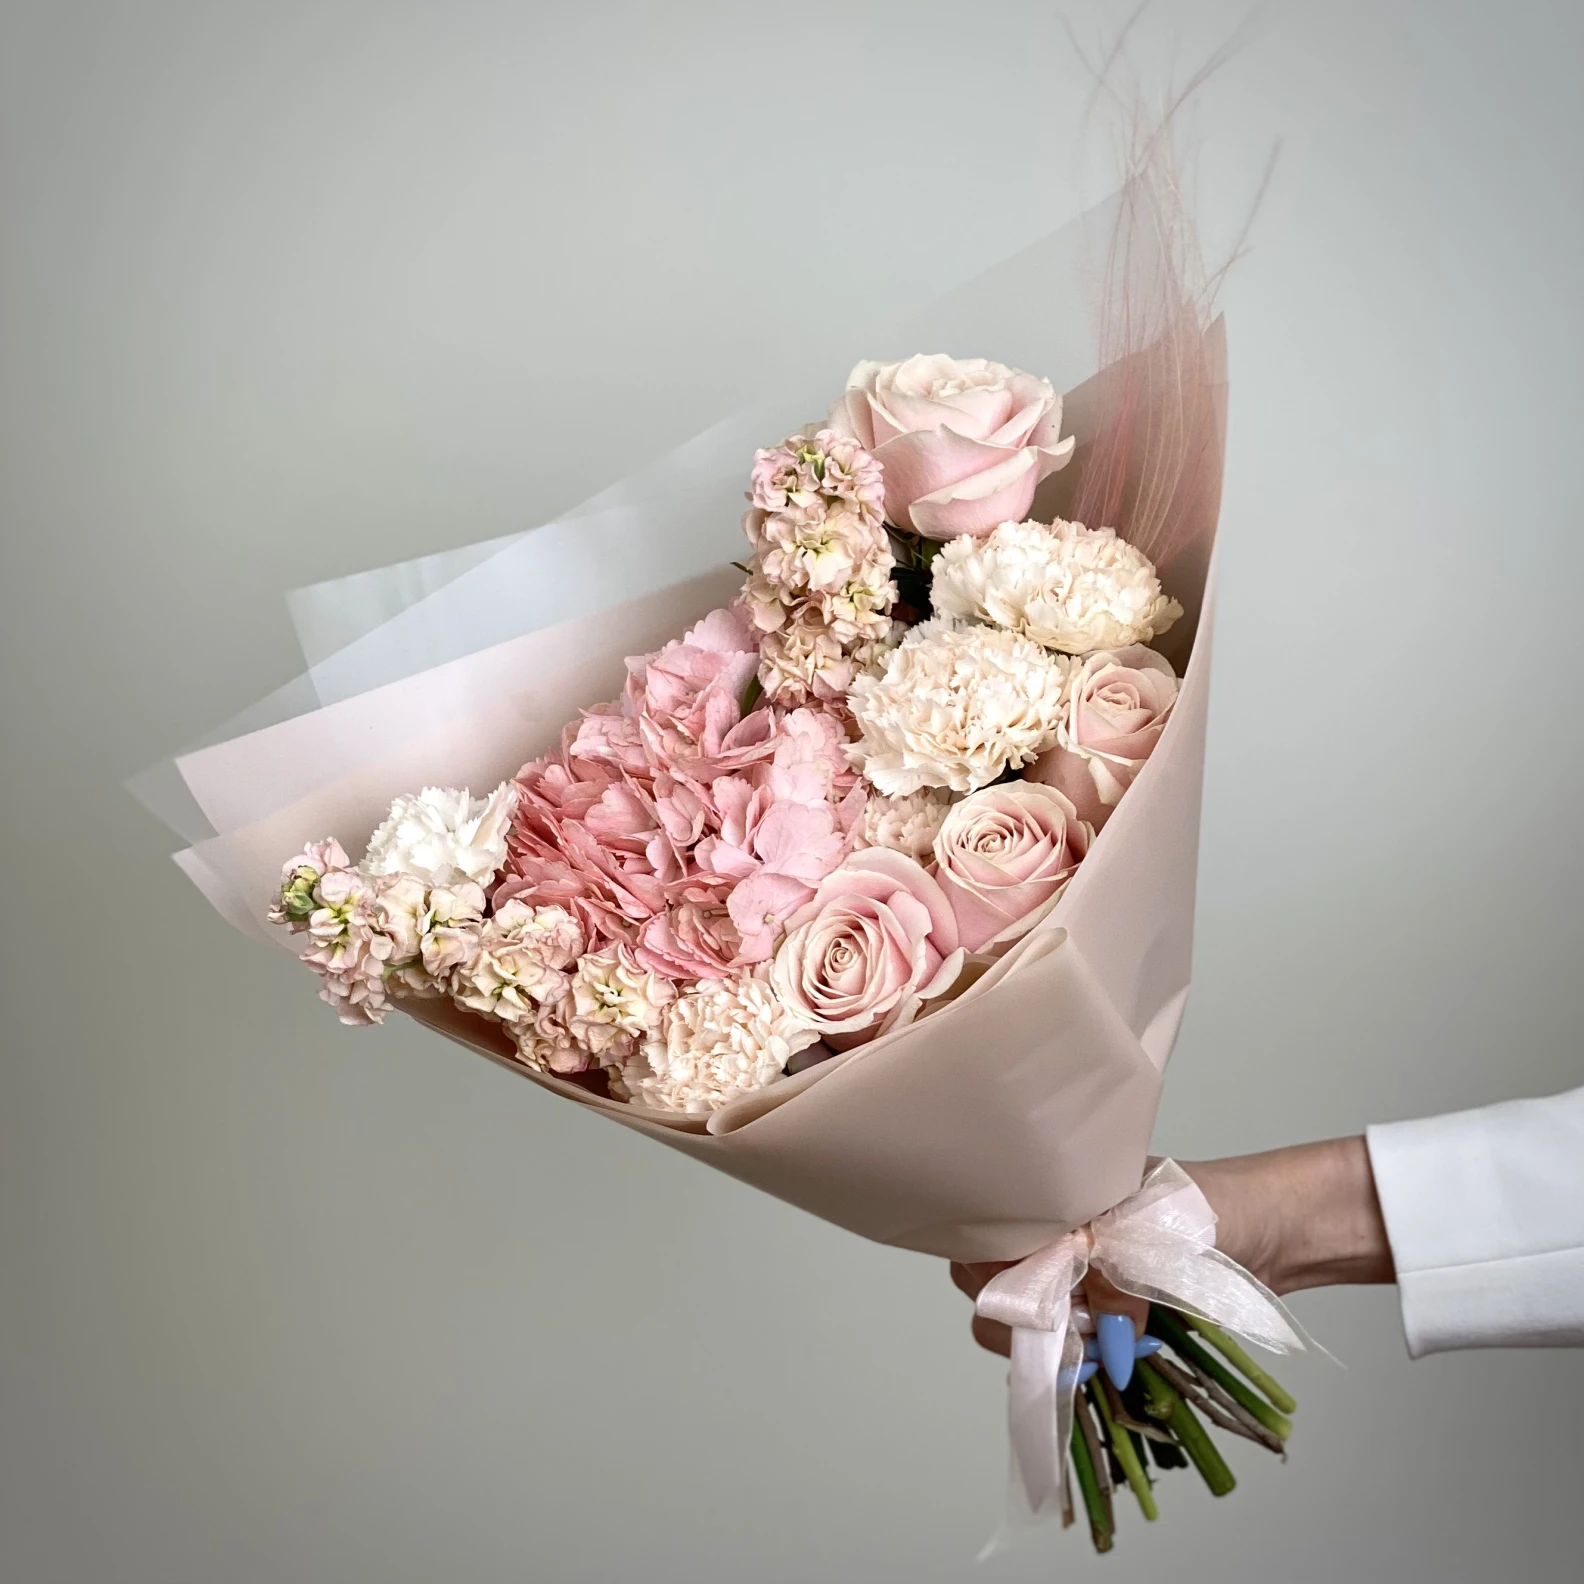 Romantic Bouquet - image №2